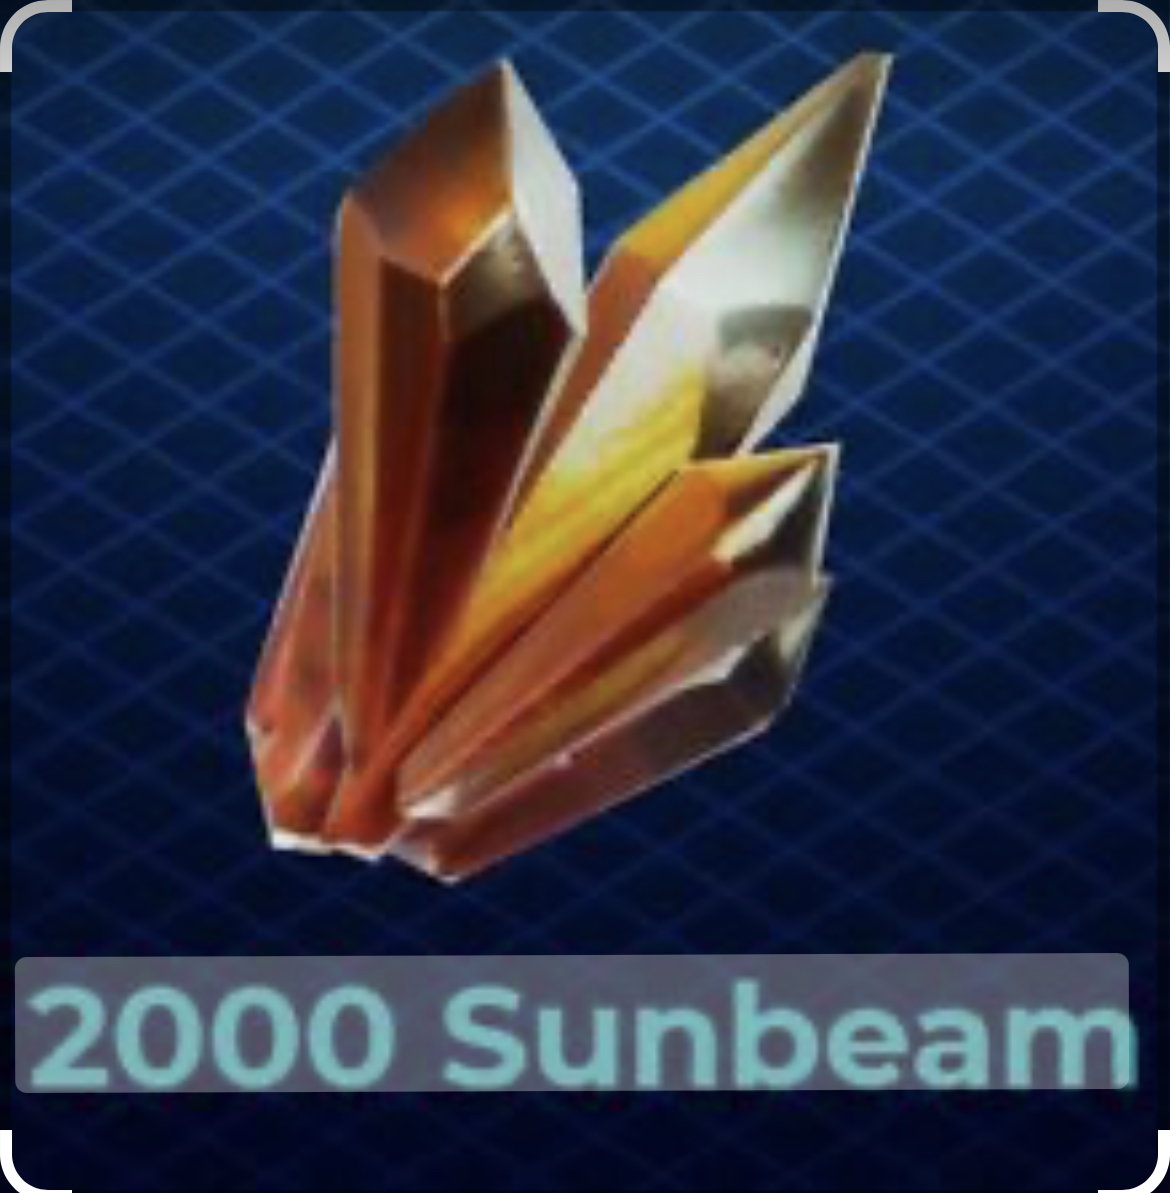 2000 sunbeam